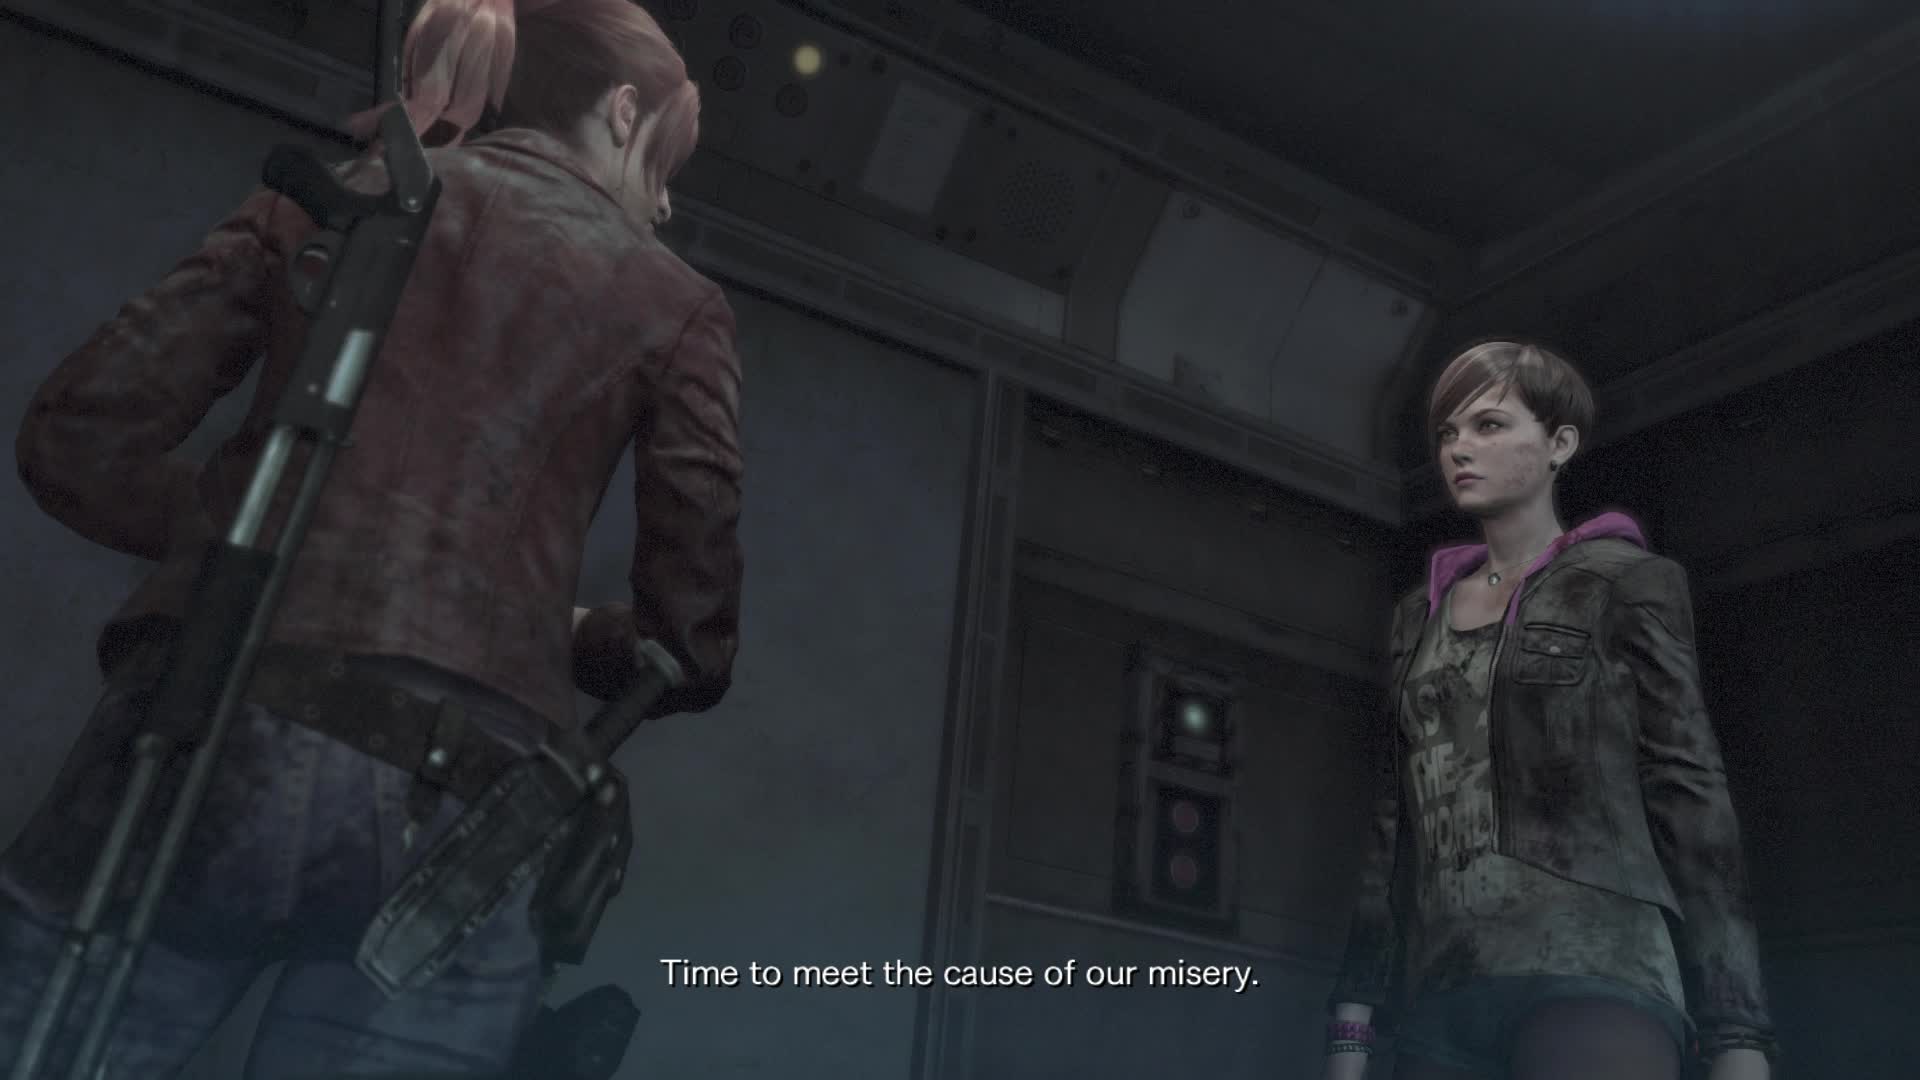 Resident Evil 2 review